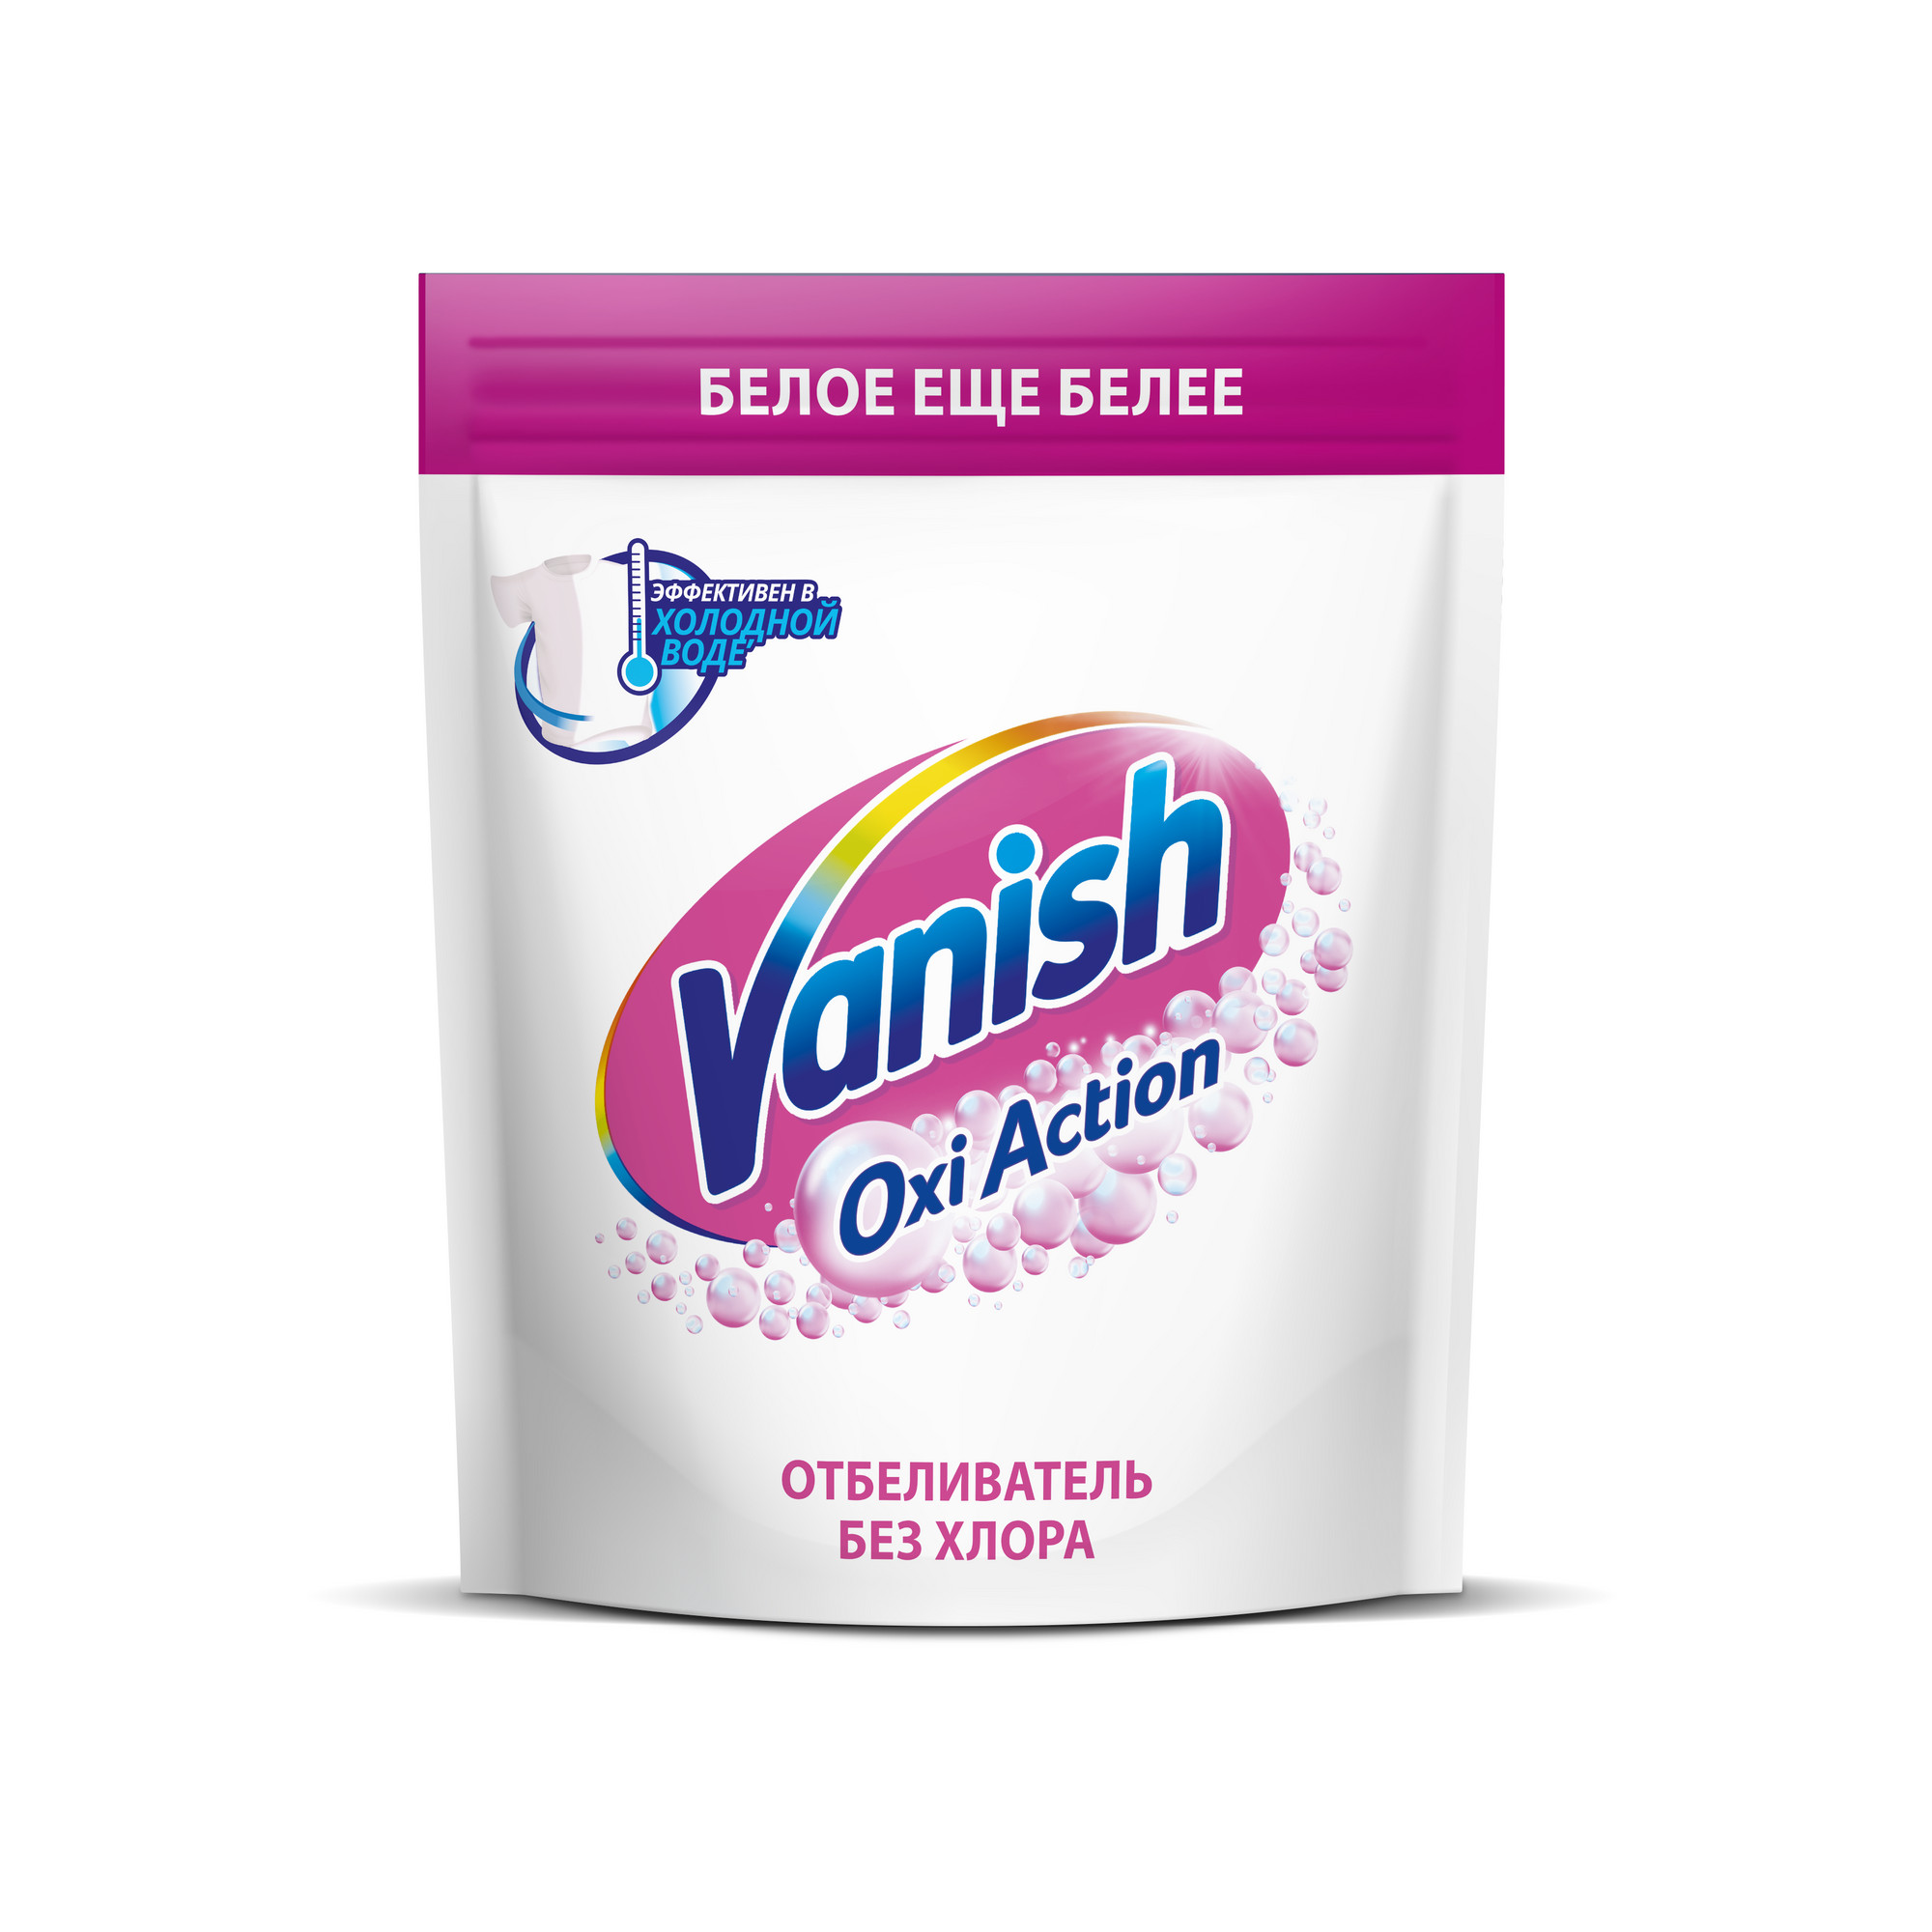 Пятновыводитель Vanish Oxi Action Кристальная Белизна порошкообразный 1 кг пятновыводитель vanish oxi action розовый порошкообразный 1 кг